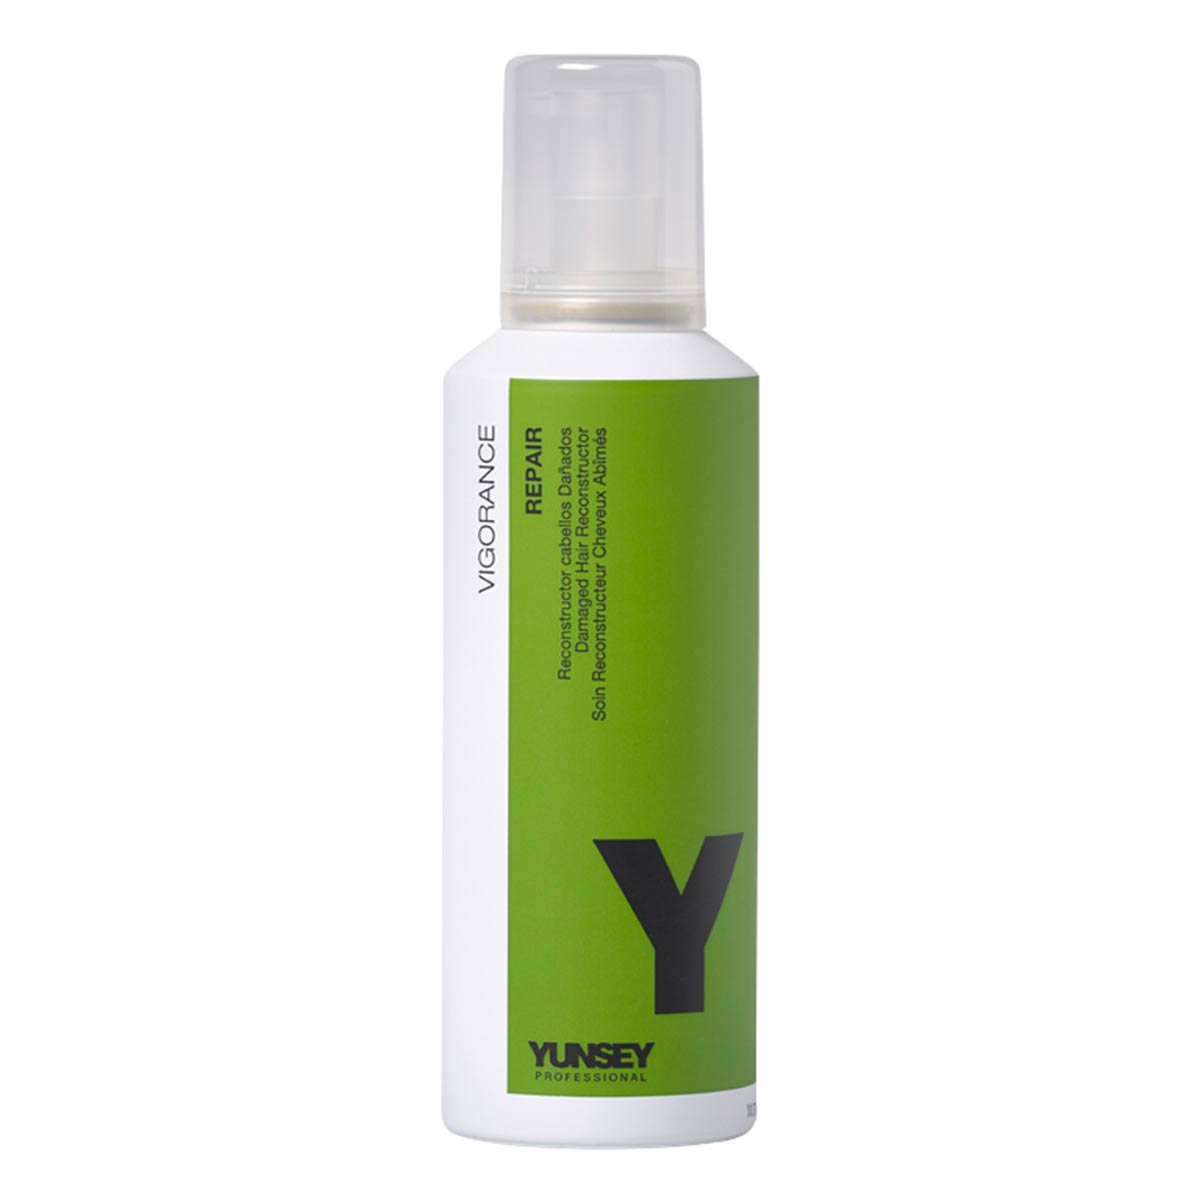 کرم احیا کننده مو و ترمیم کننده مو یانسی yunsey مناسب برای موهای آسیب دیده سری ویگرانس Vigorance Repair حجم 200 میلی لیتر